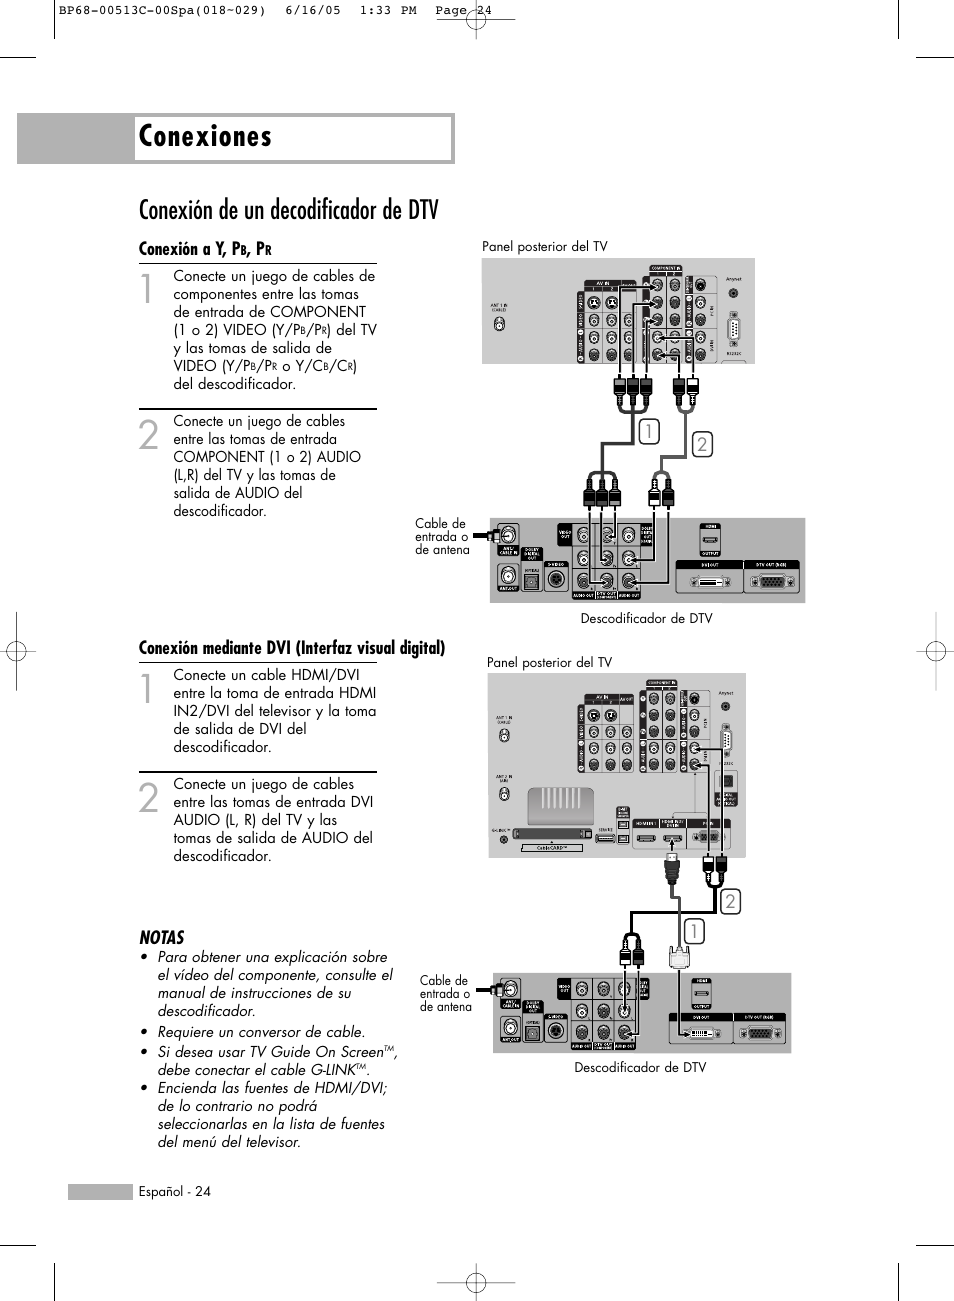 Conexiones, Conexión de un decodificador de dtv | Samsung HL-R5078W Manual del usuario | Página 24 / 144